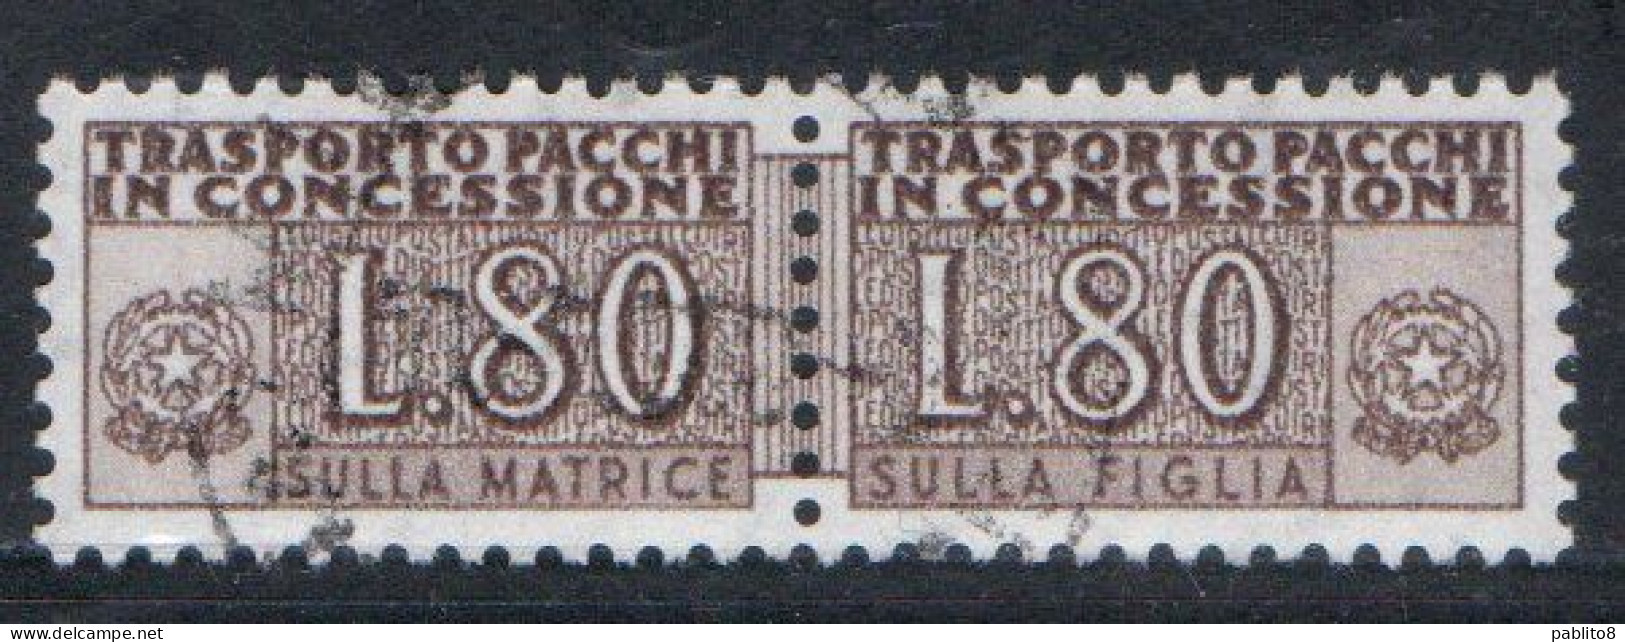 ITALIA REPUBBLICA ITALY REPUBLIC 1955 1981 PACCHI IN CONCESSIONE PARCEL POST STELLE STARS 1960 LIRE 80 USATO USED OBLIT - Pacchi In Concessione